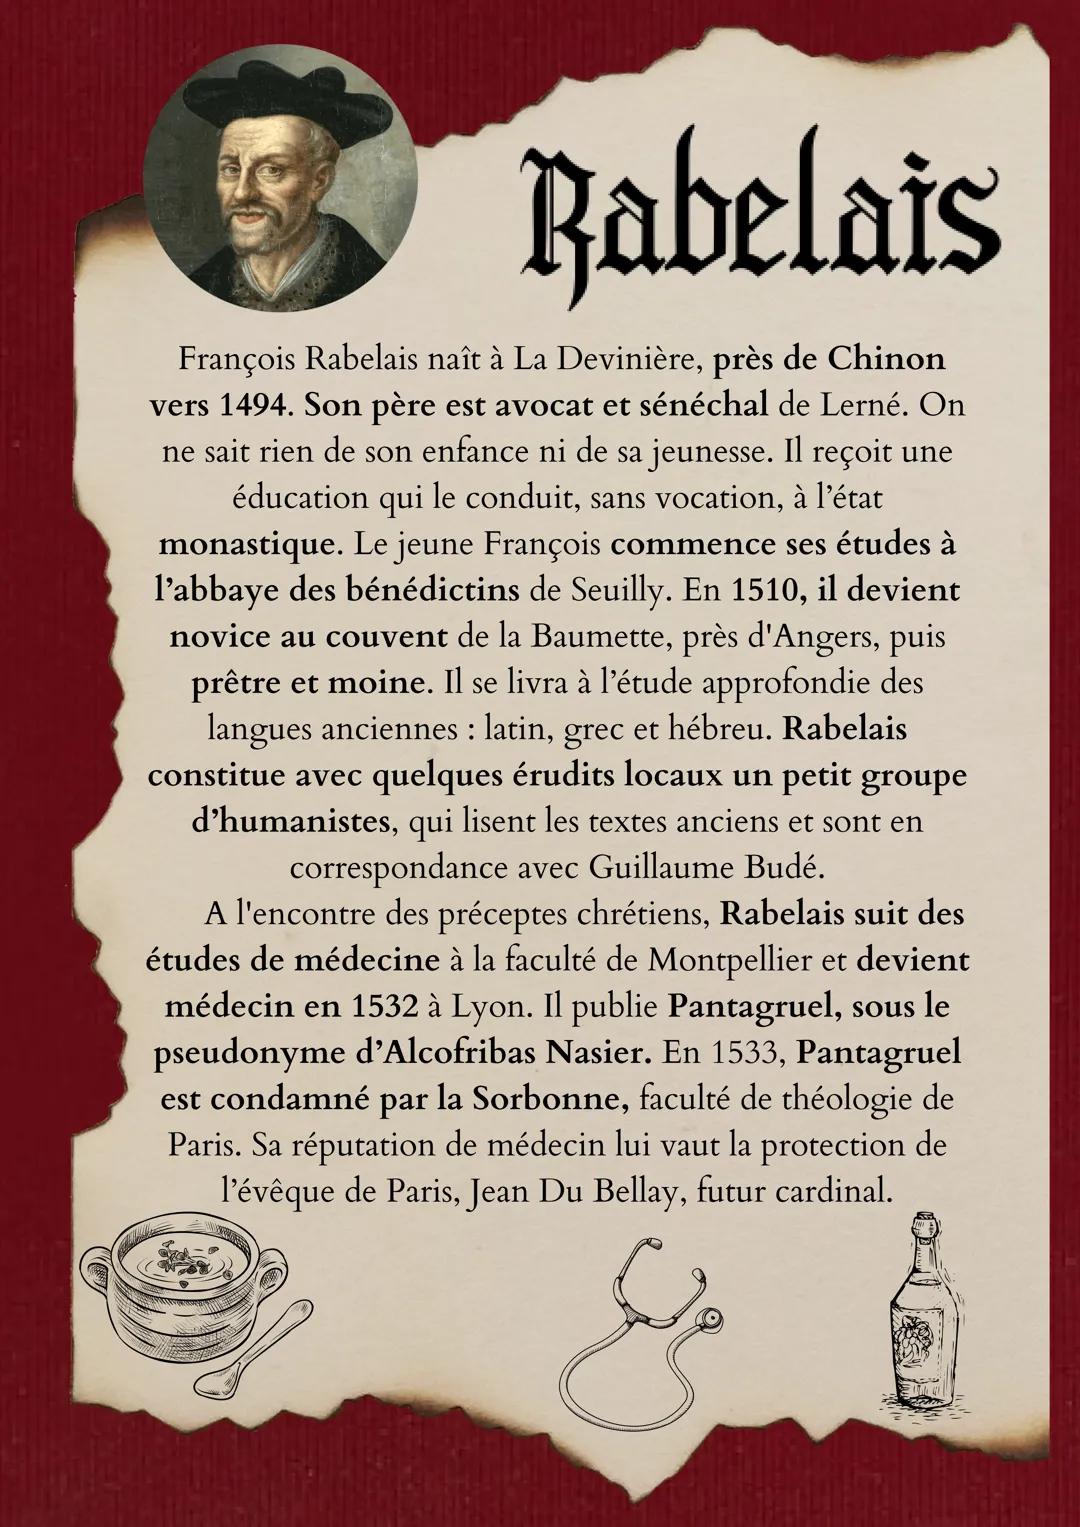 Rabelais
François Rabelais naît à La Devinière, près de Chinon
vers 1494. Son père est avocat et sénéchal de Lerné. On
ne sait rien de son e